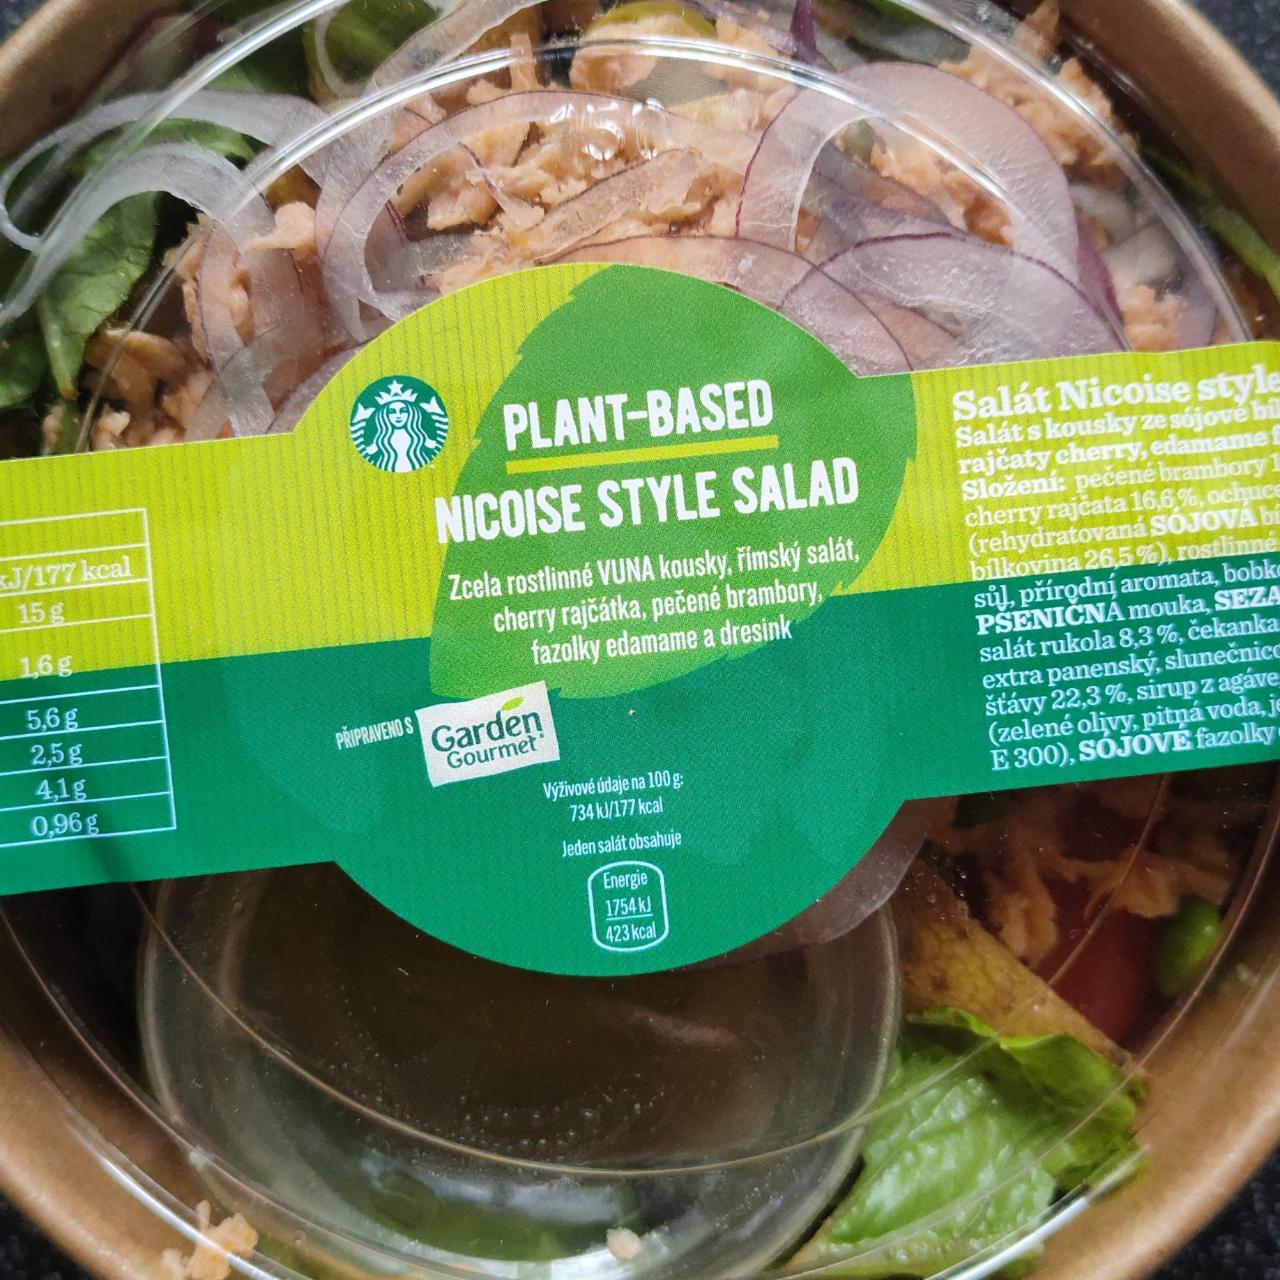 Fotografie - Plant-based Nicoise style salad Starbucks & Garden Gourmet